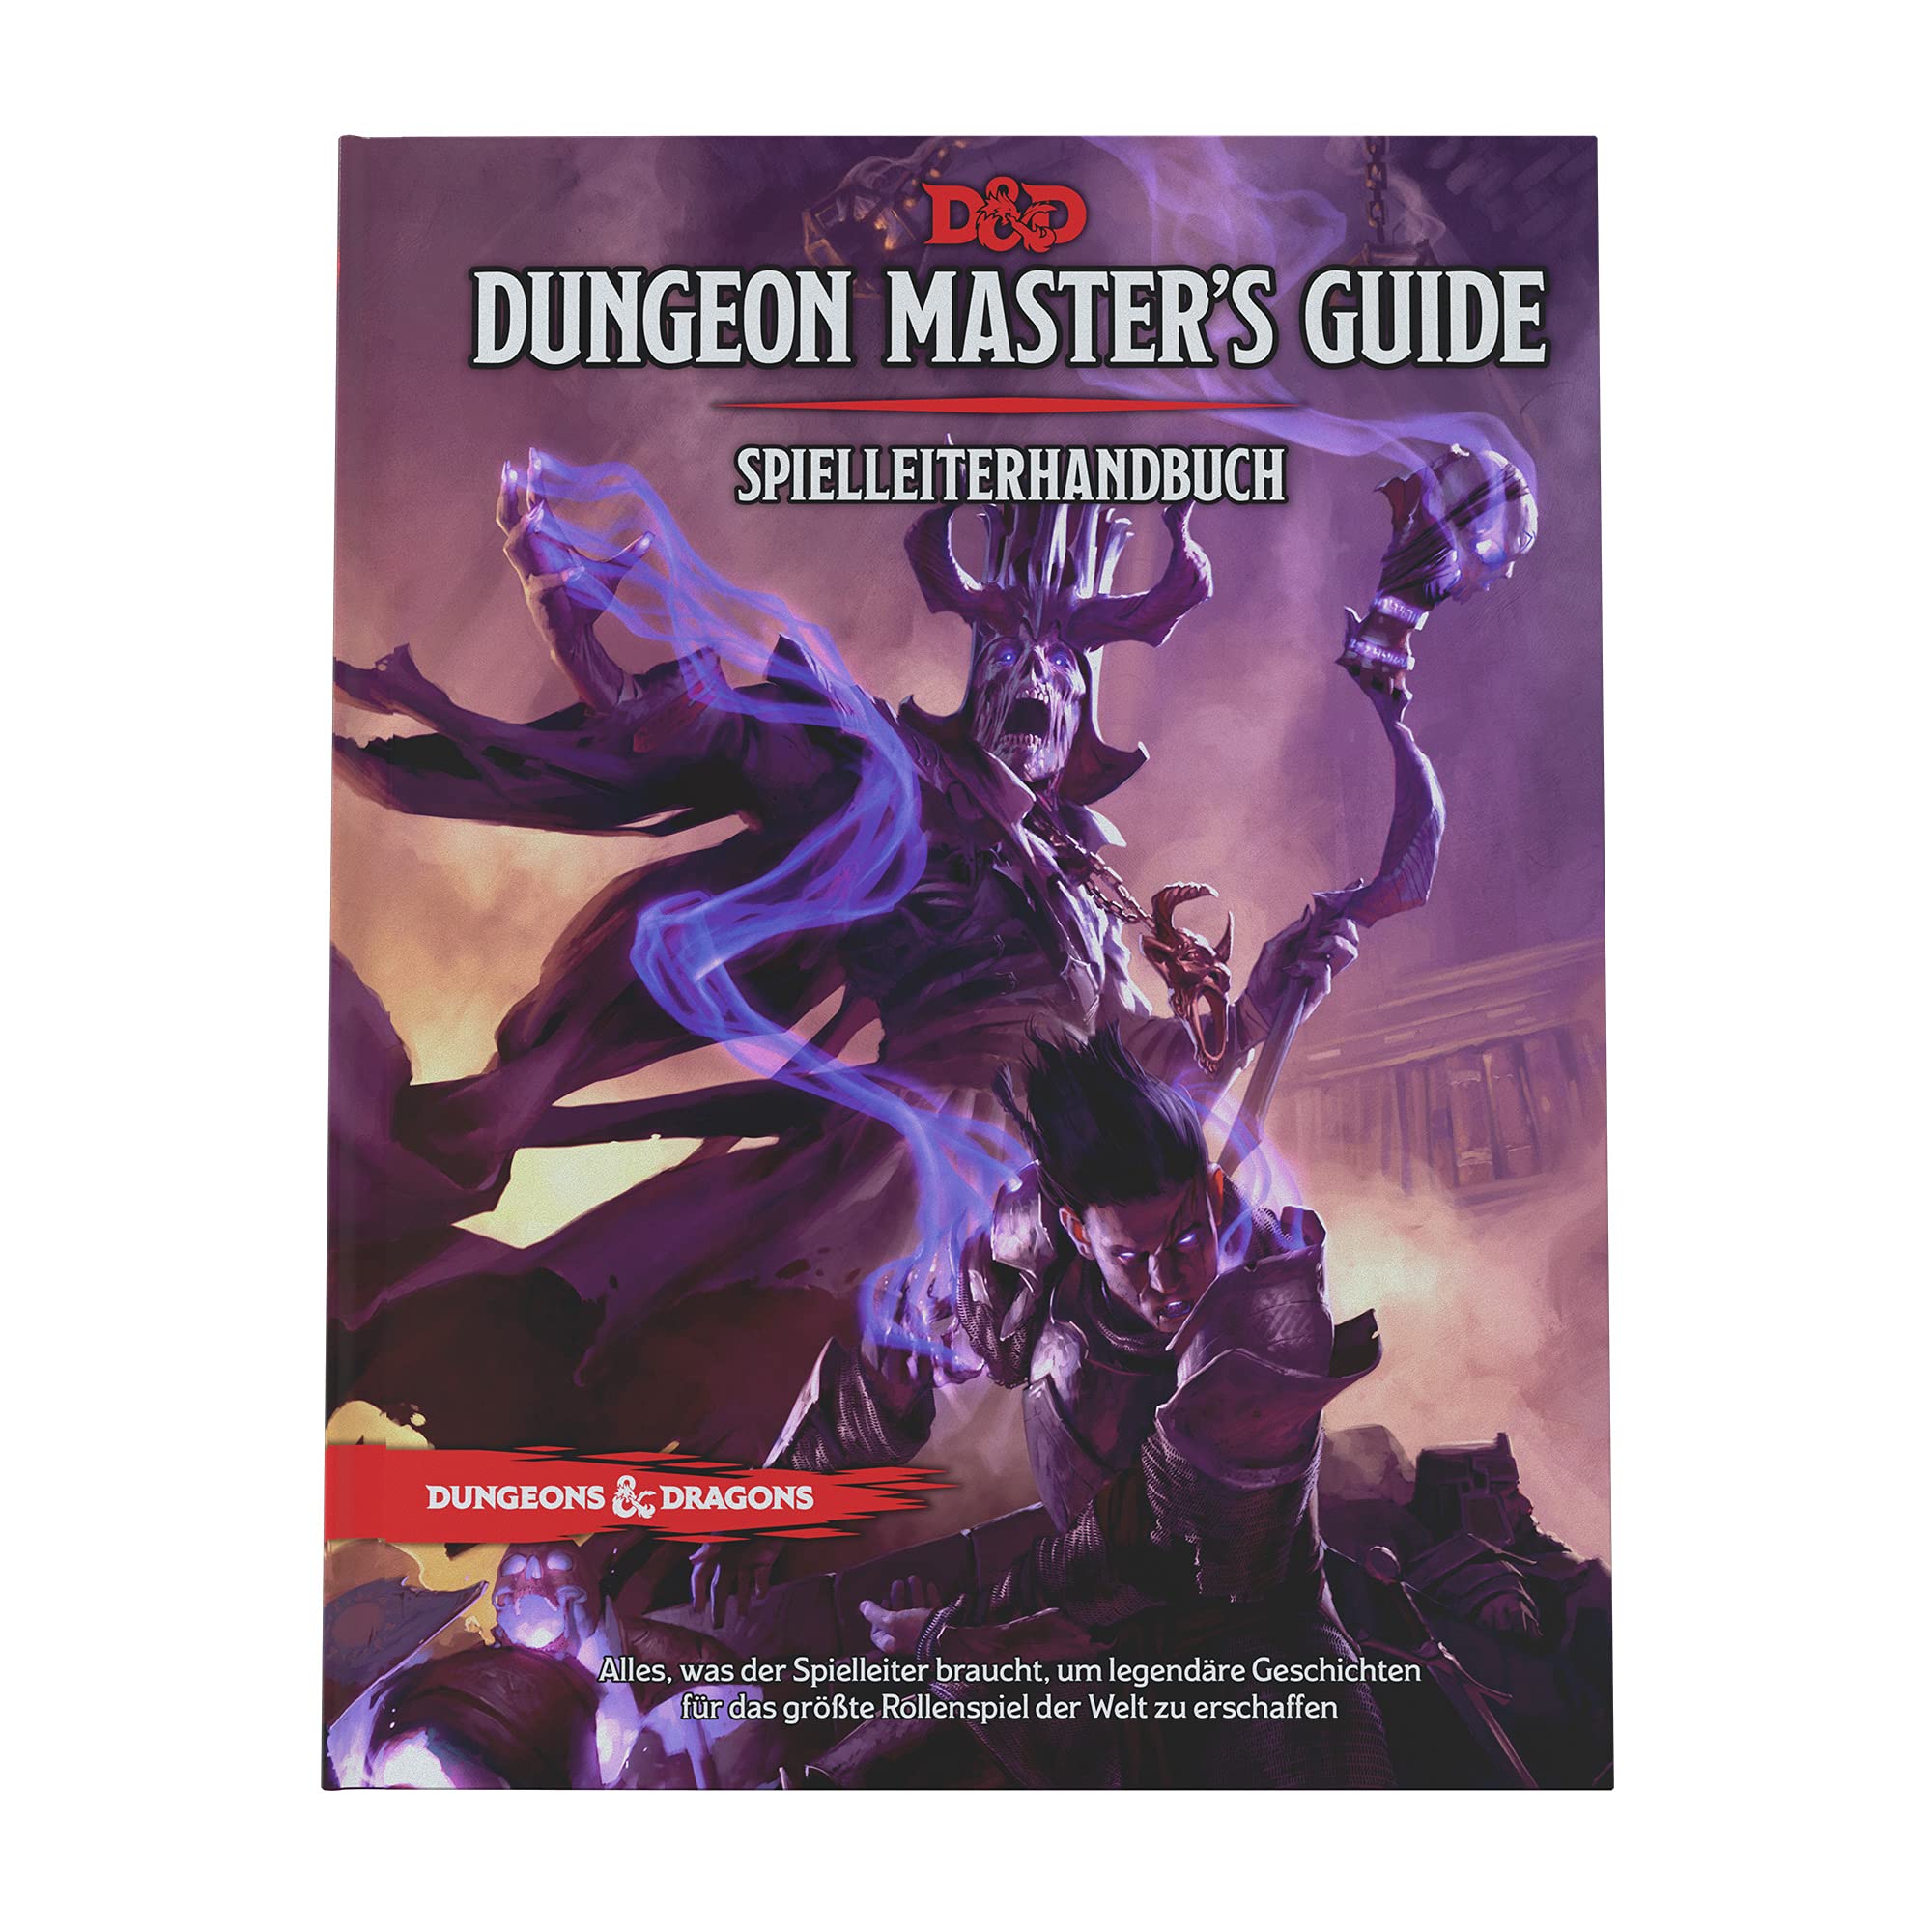 DE Dungeons & Dragons Spielleiterhandbuch Game Master's Guide 